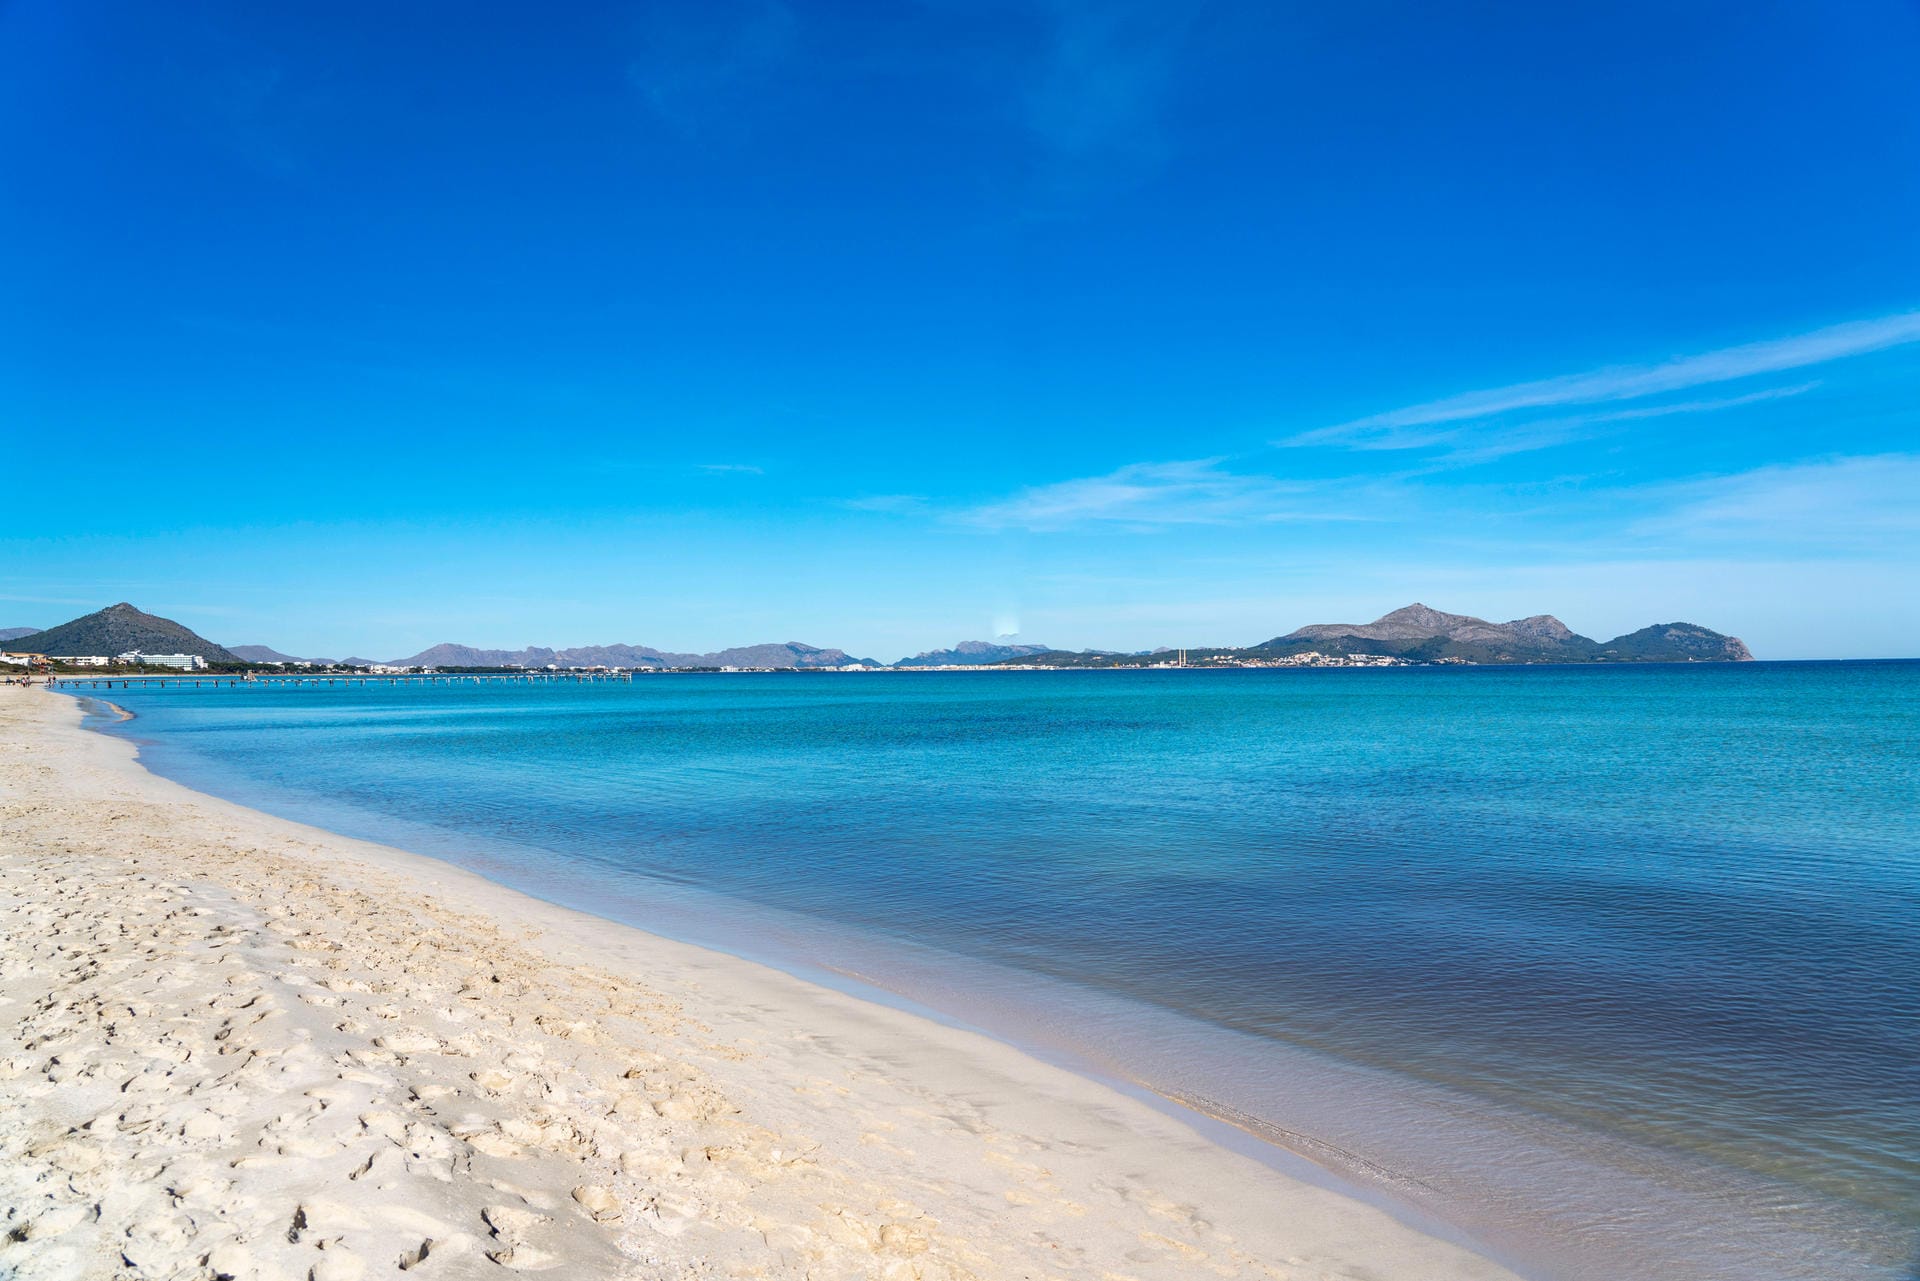 Platz 10 Platja de Muro: Dieser Strand ist mit sechs Kilometern der längste Sandstrand Mallorcas.